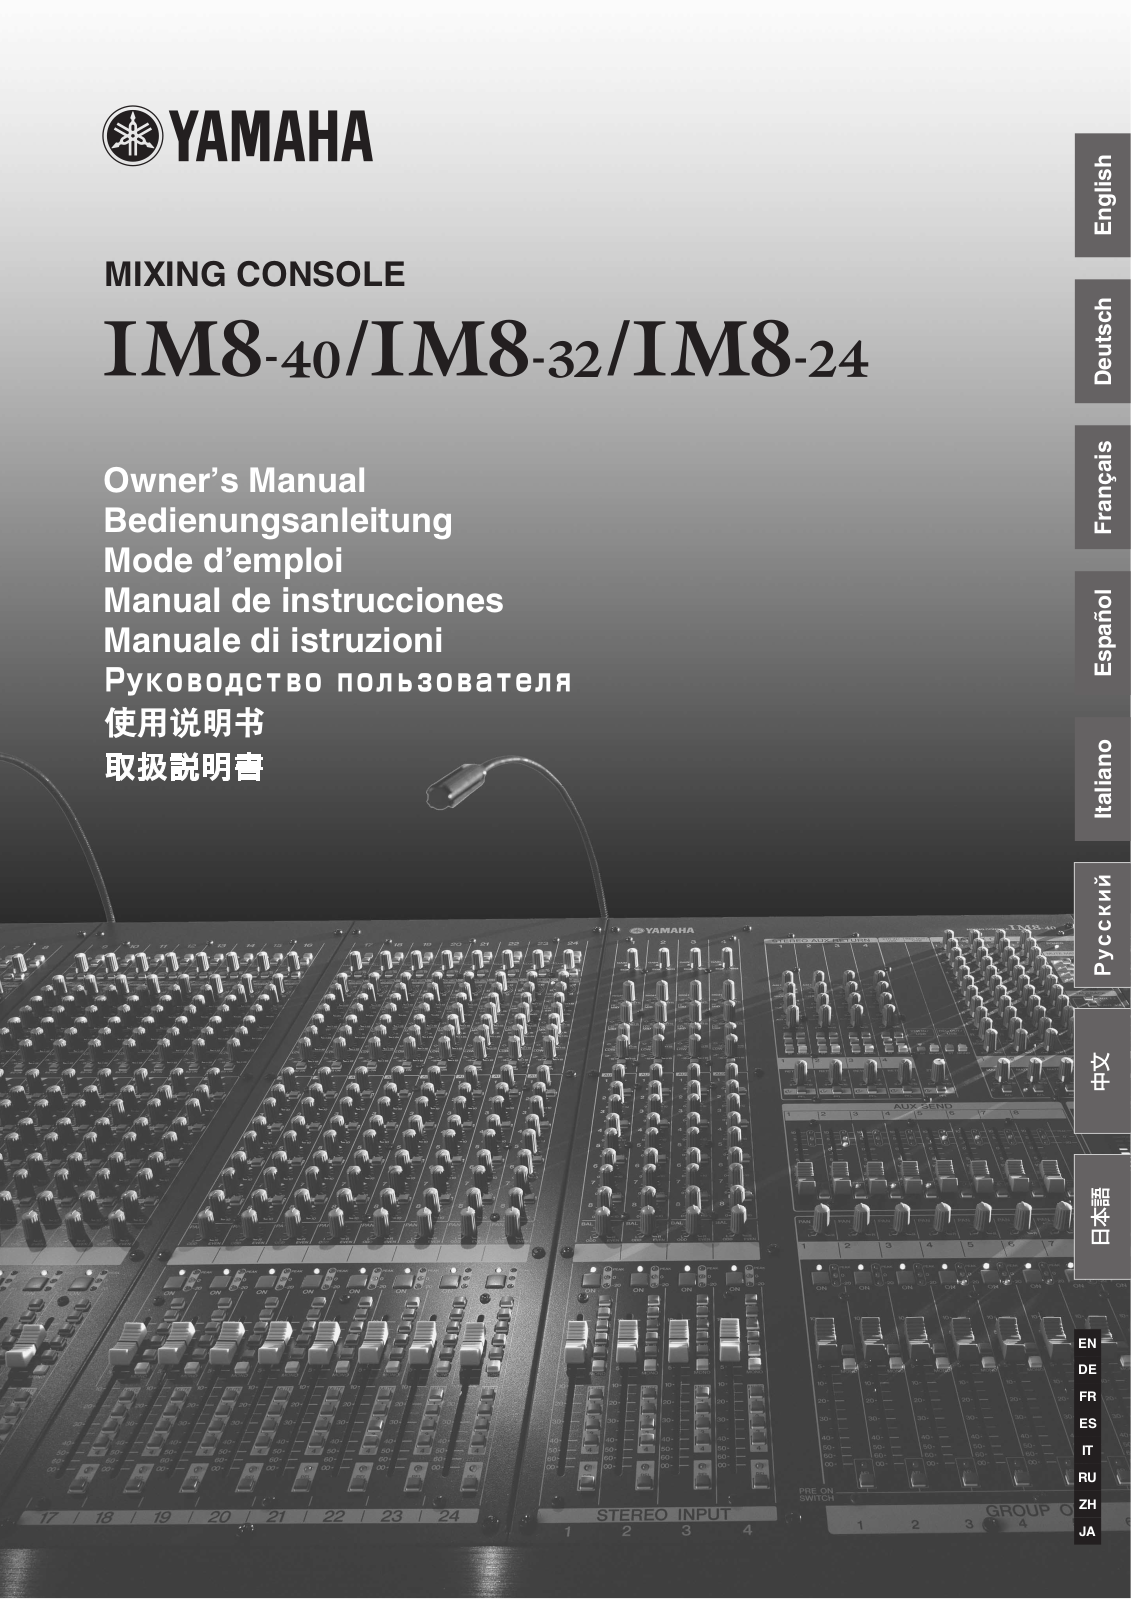 Yamaha IM8-40, IM8-32, IM8-24 User Manual